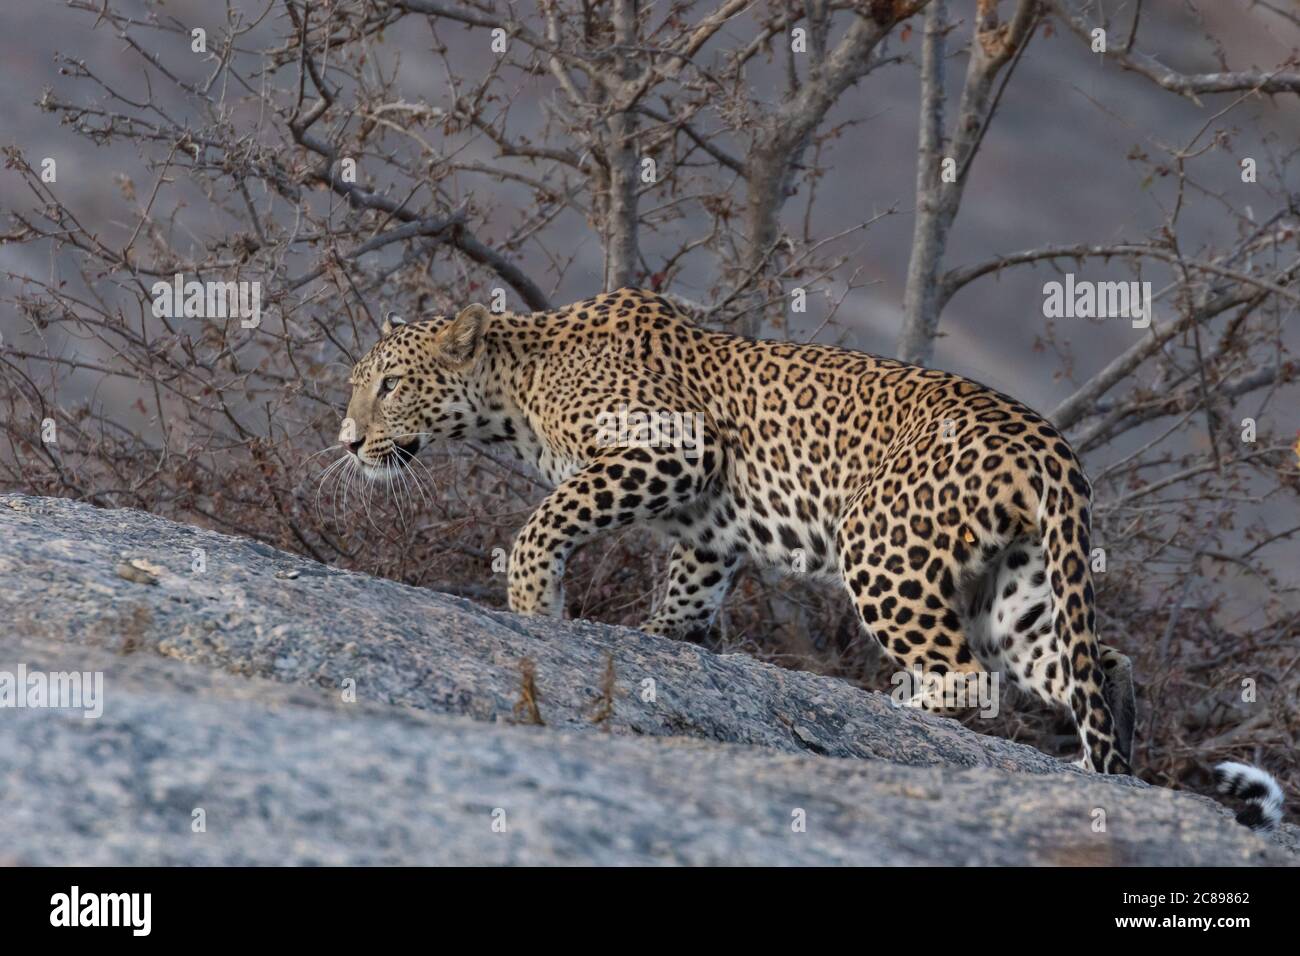 Image sélective du léopard indien adulte avec son torsadé queue s'étirant avec élégance avec sa patte droite devant sur un rock et regarder droit Banque D'Images